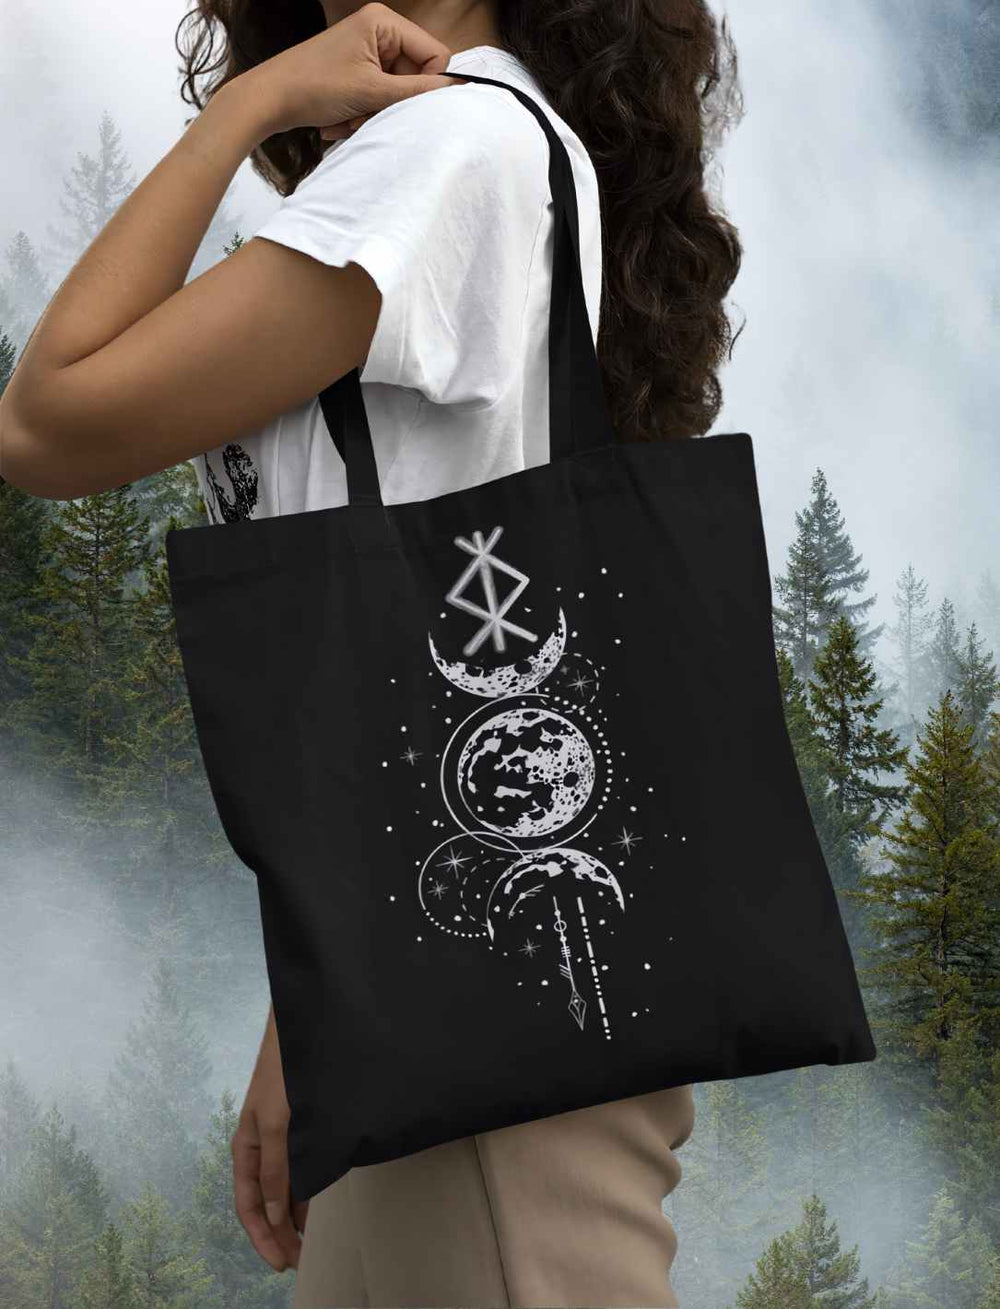 Frau trägt Rune des Mondschein Wächters organic Tote Bag von Runental.de, Farbe schwarz